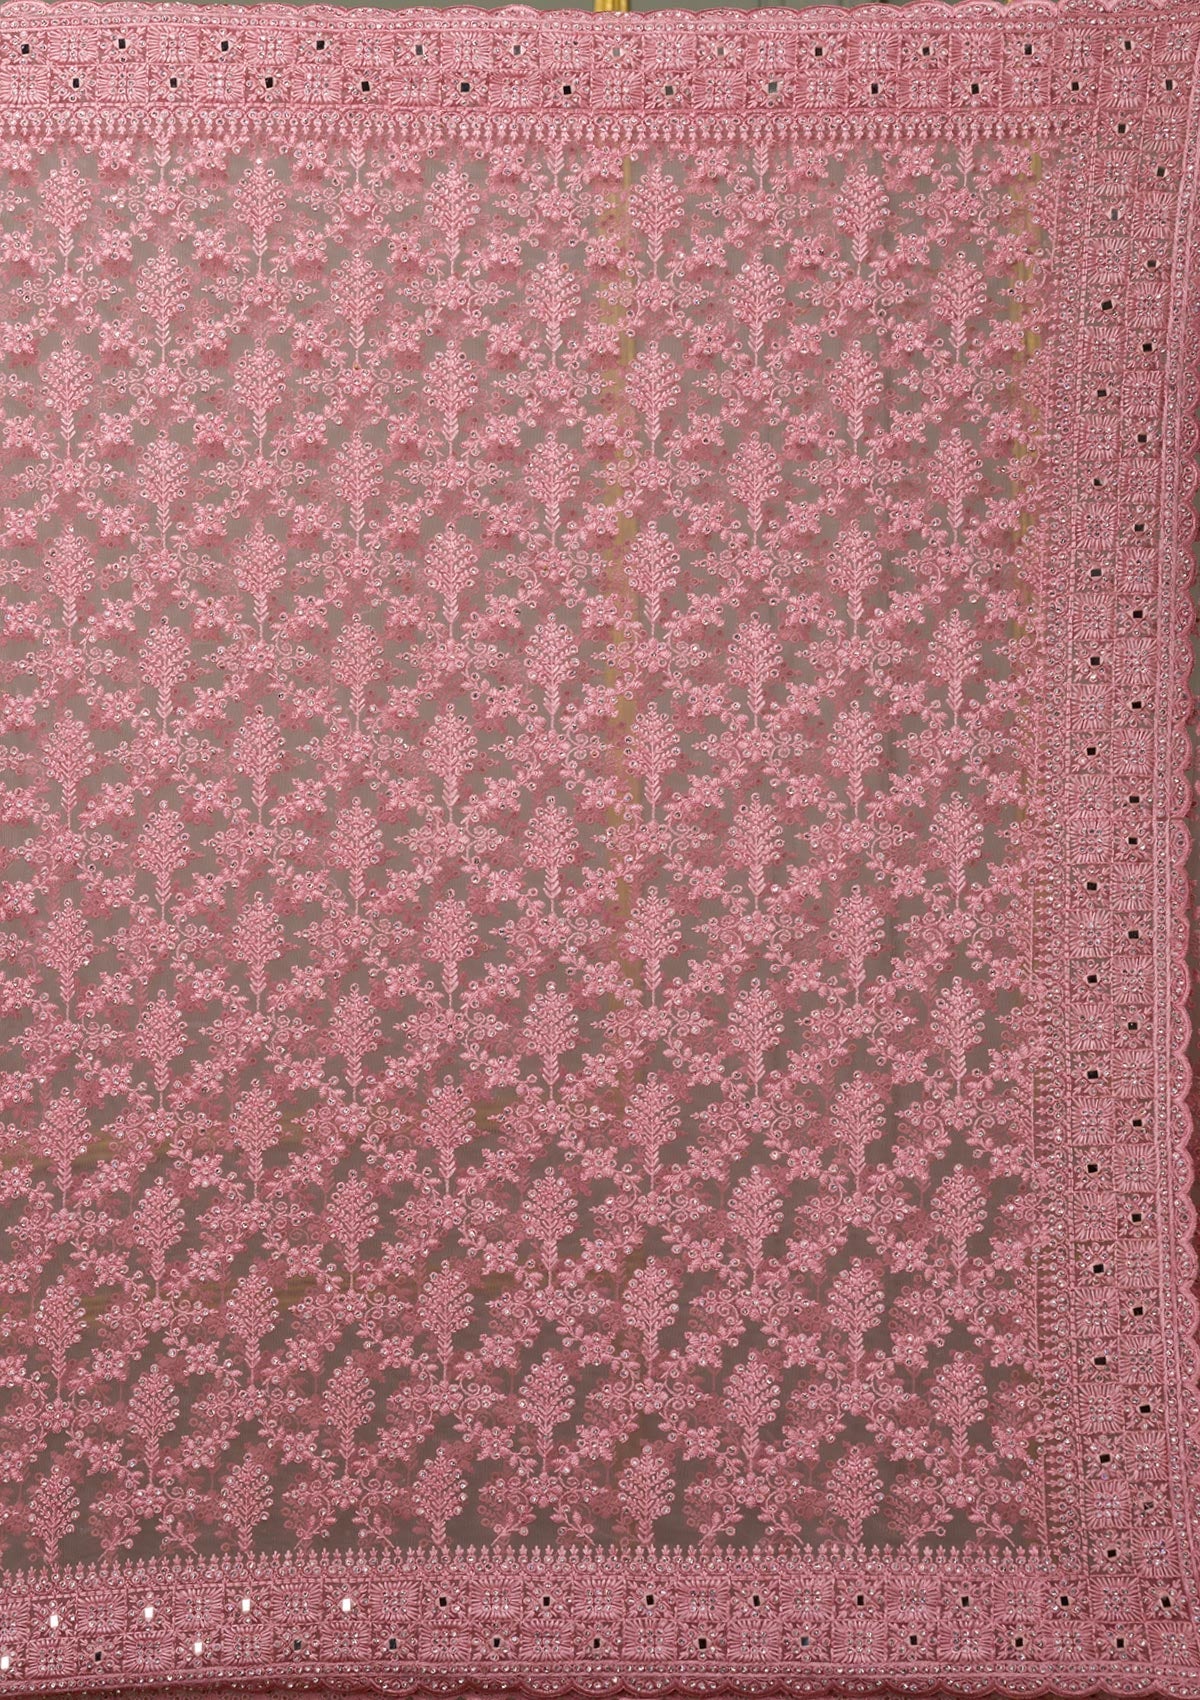 Onion Pink Threadwork Net Saree-Koskii